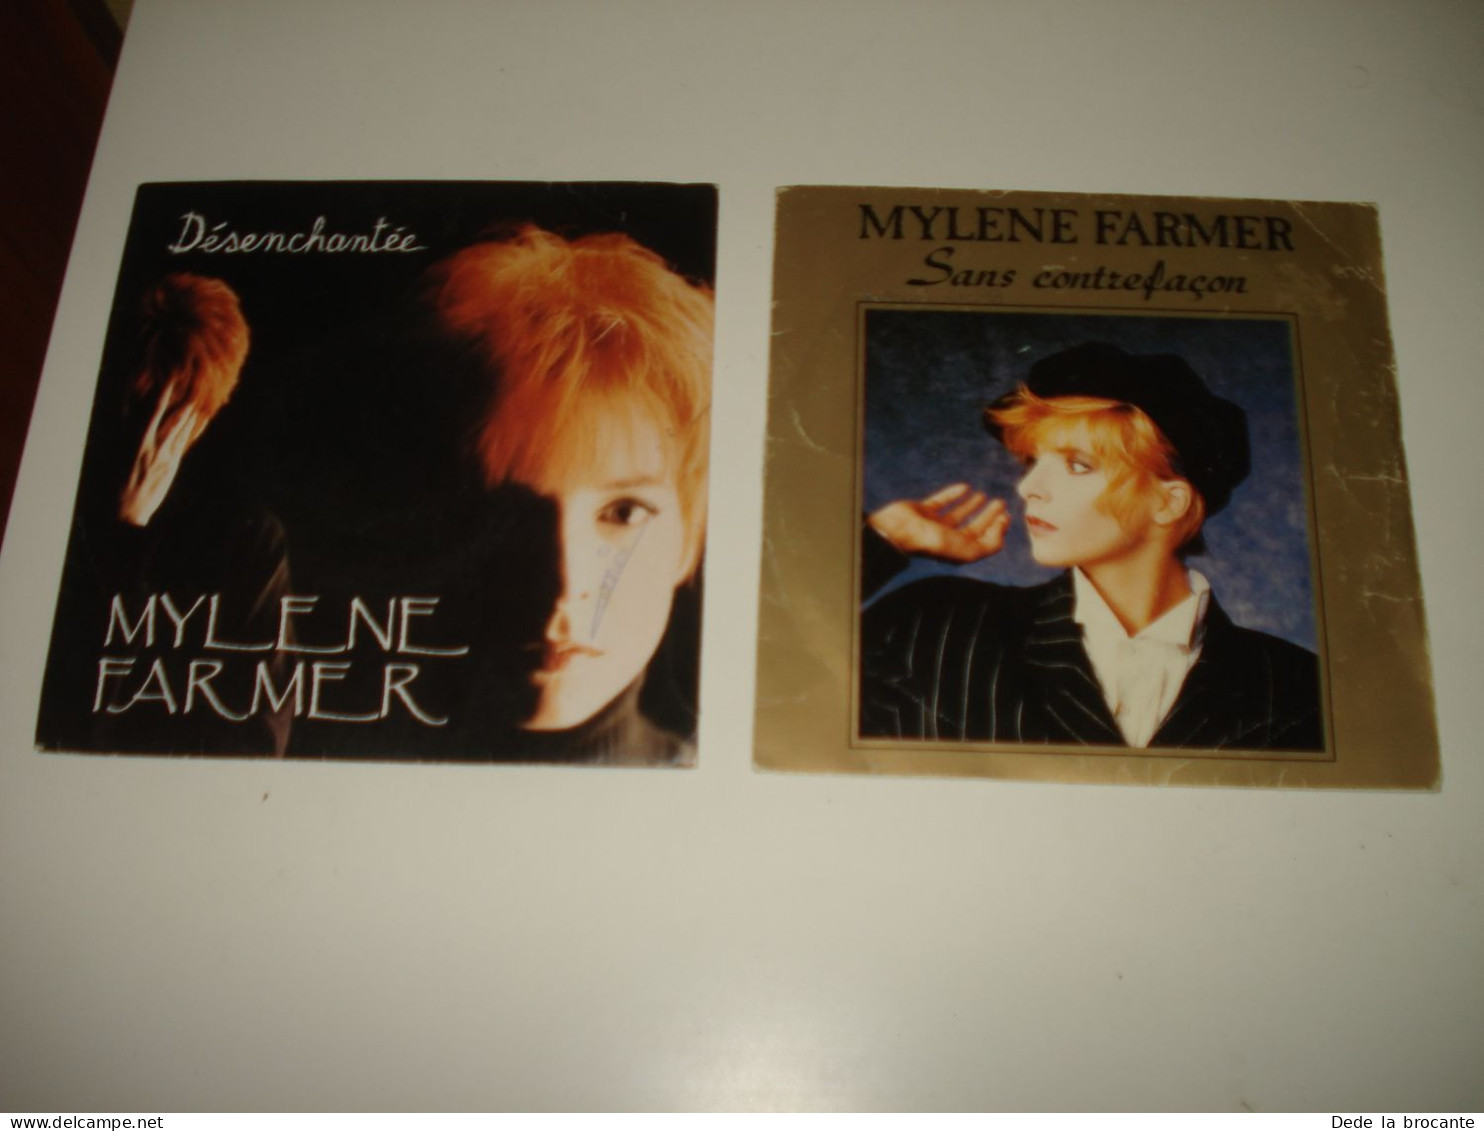 B14/  Lot De 2 SP  -  Mylene Farmer  - Sans Contre Façon + Désenchantée VG++/EX - Disco & Pop